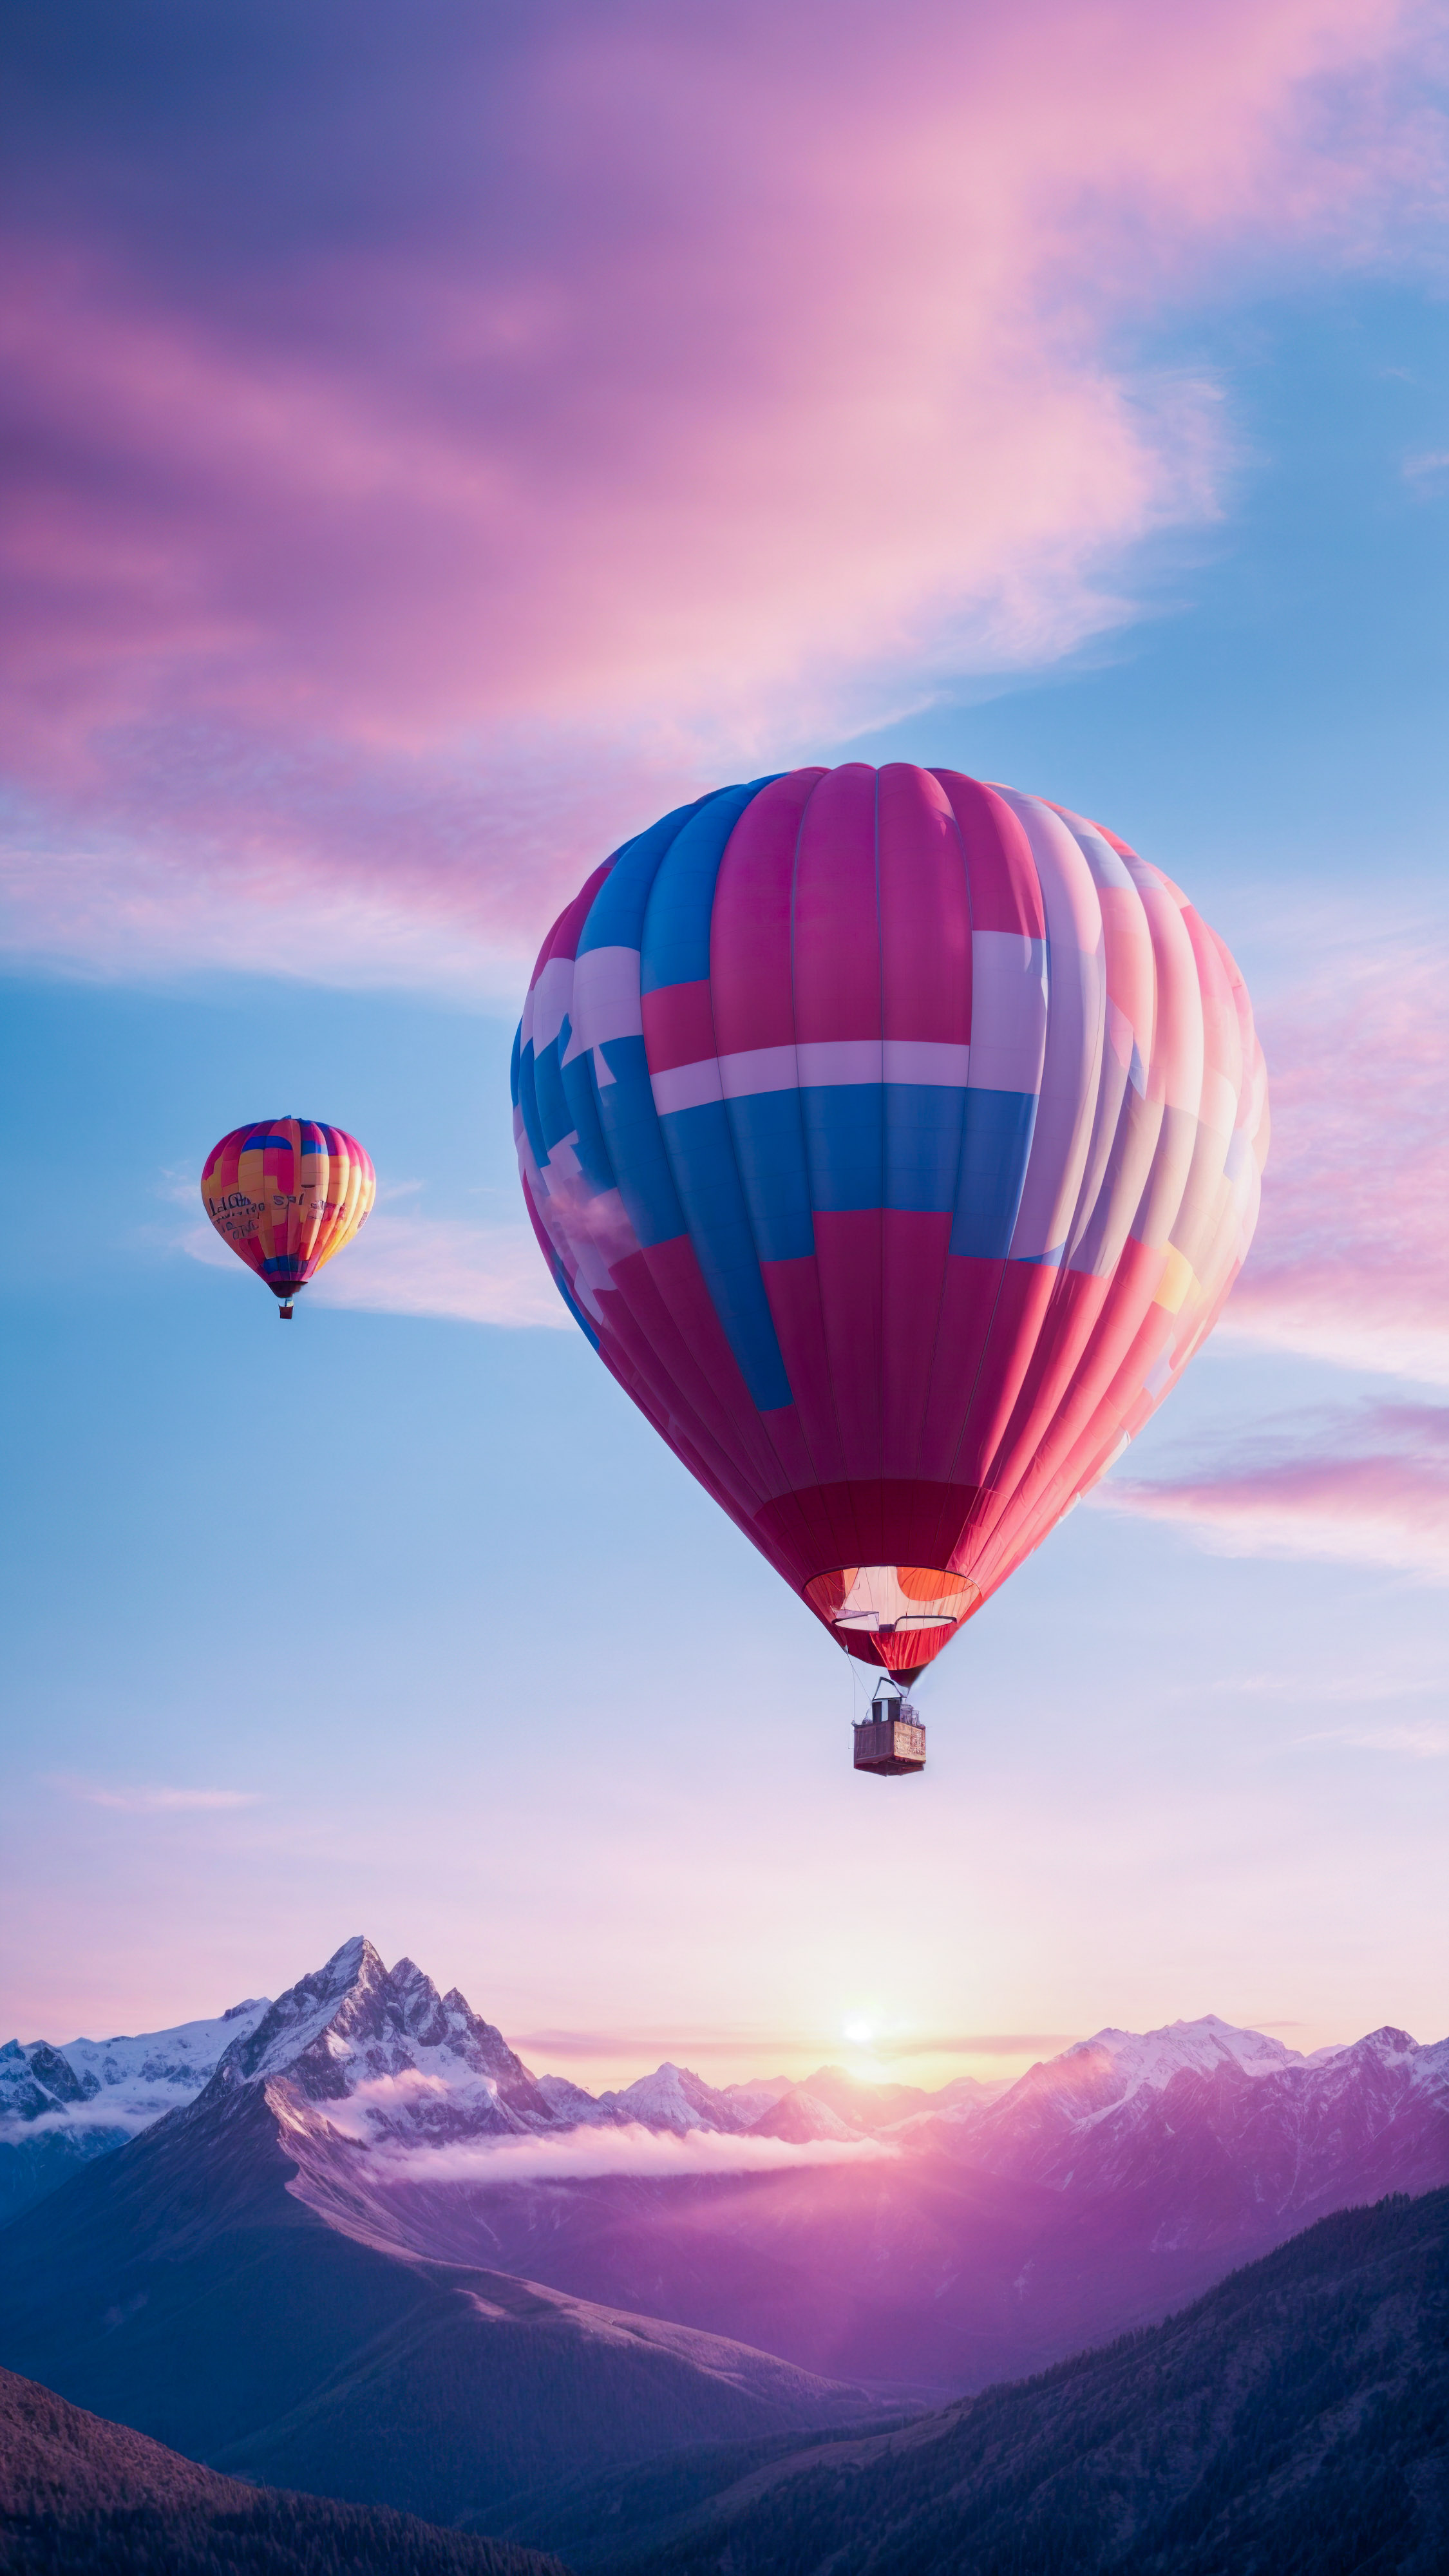 Perdez-vous dans la magie d'un lever de soleil sur les montagnes, avec des teintes roses et bleues et une montgolfière volant dans le ciel, en choisissant ce fond d'écran pour iPhone.